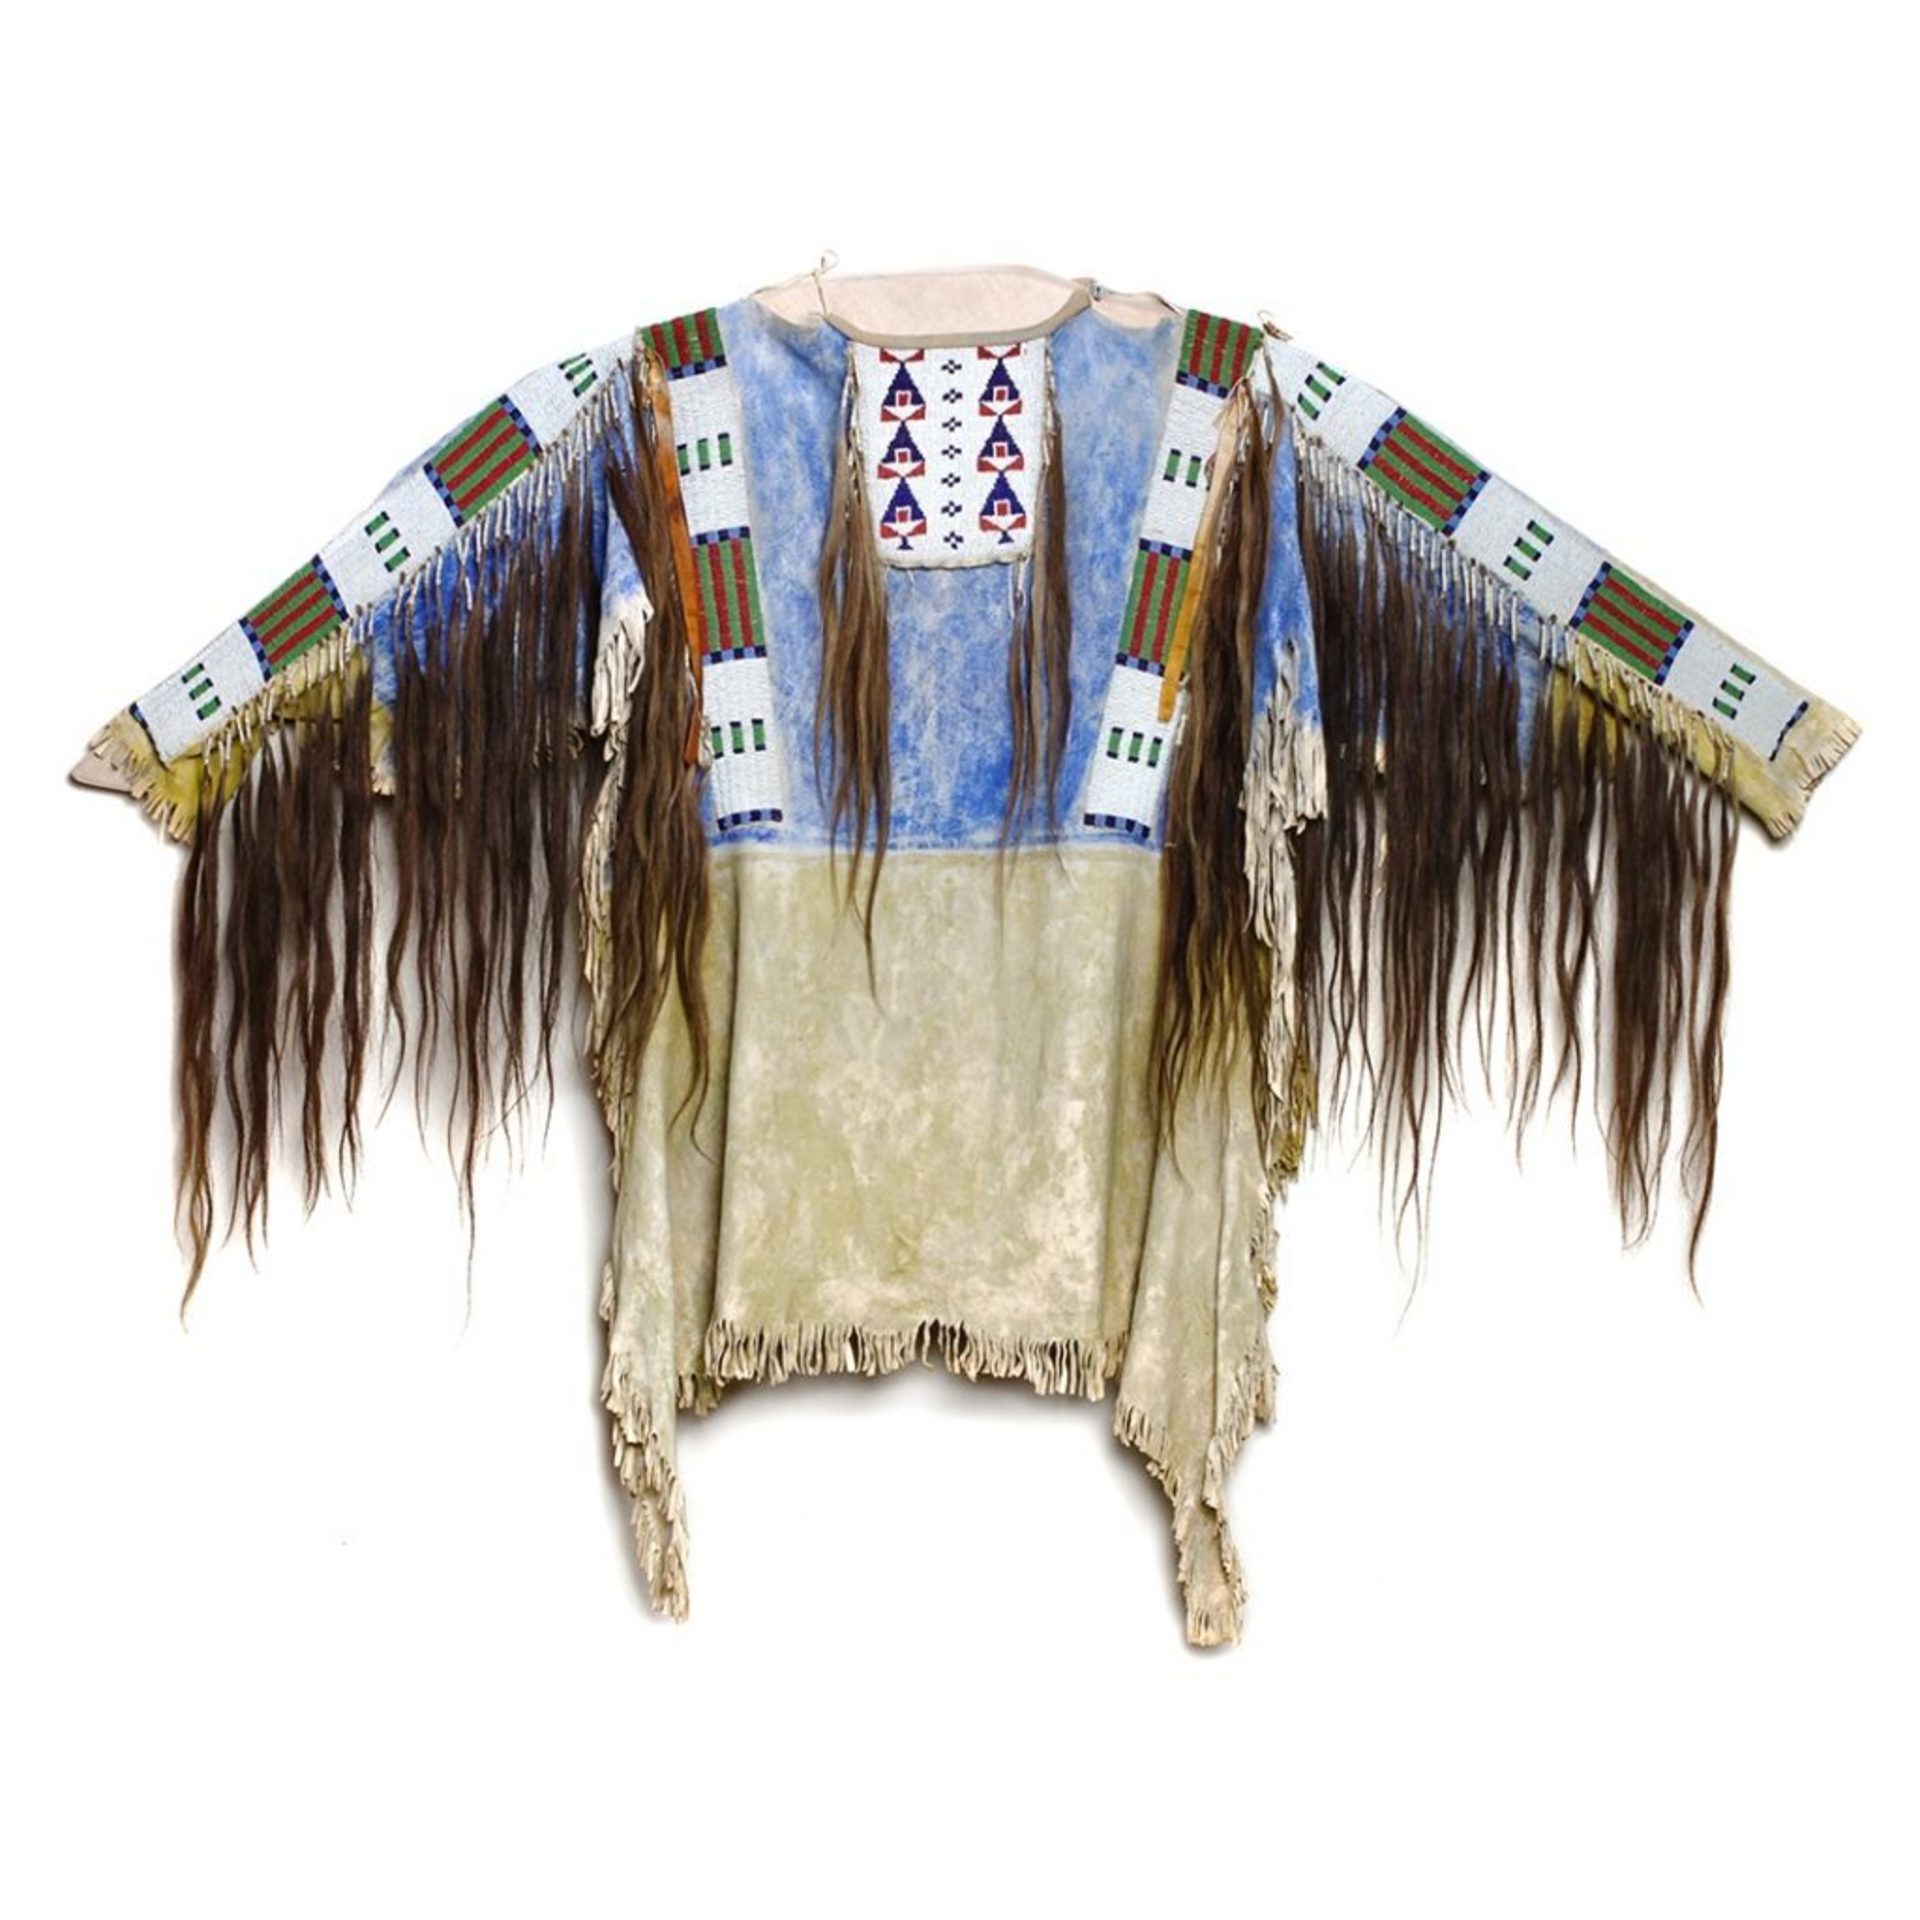 New Sioux shirt designer refutes UND's cease and desist - InForum